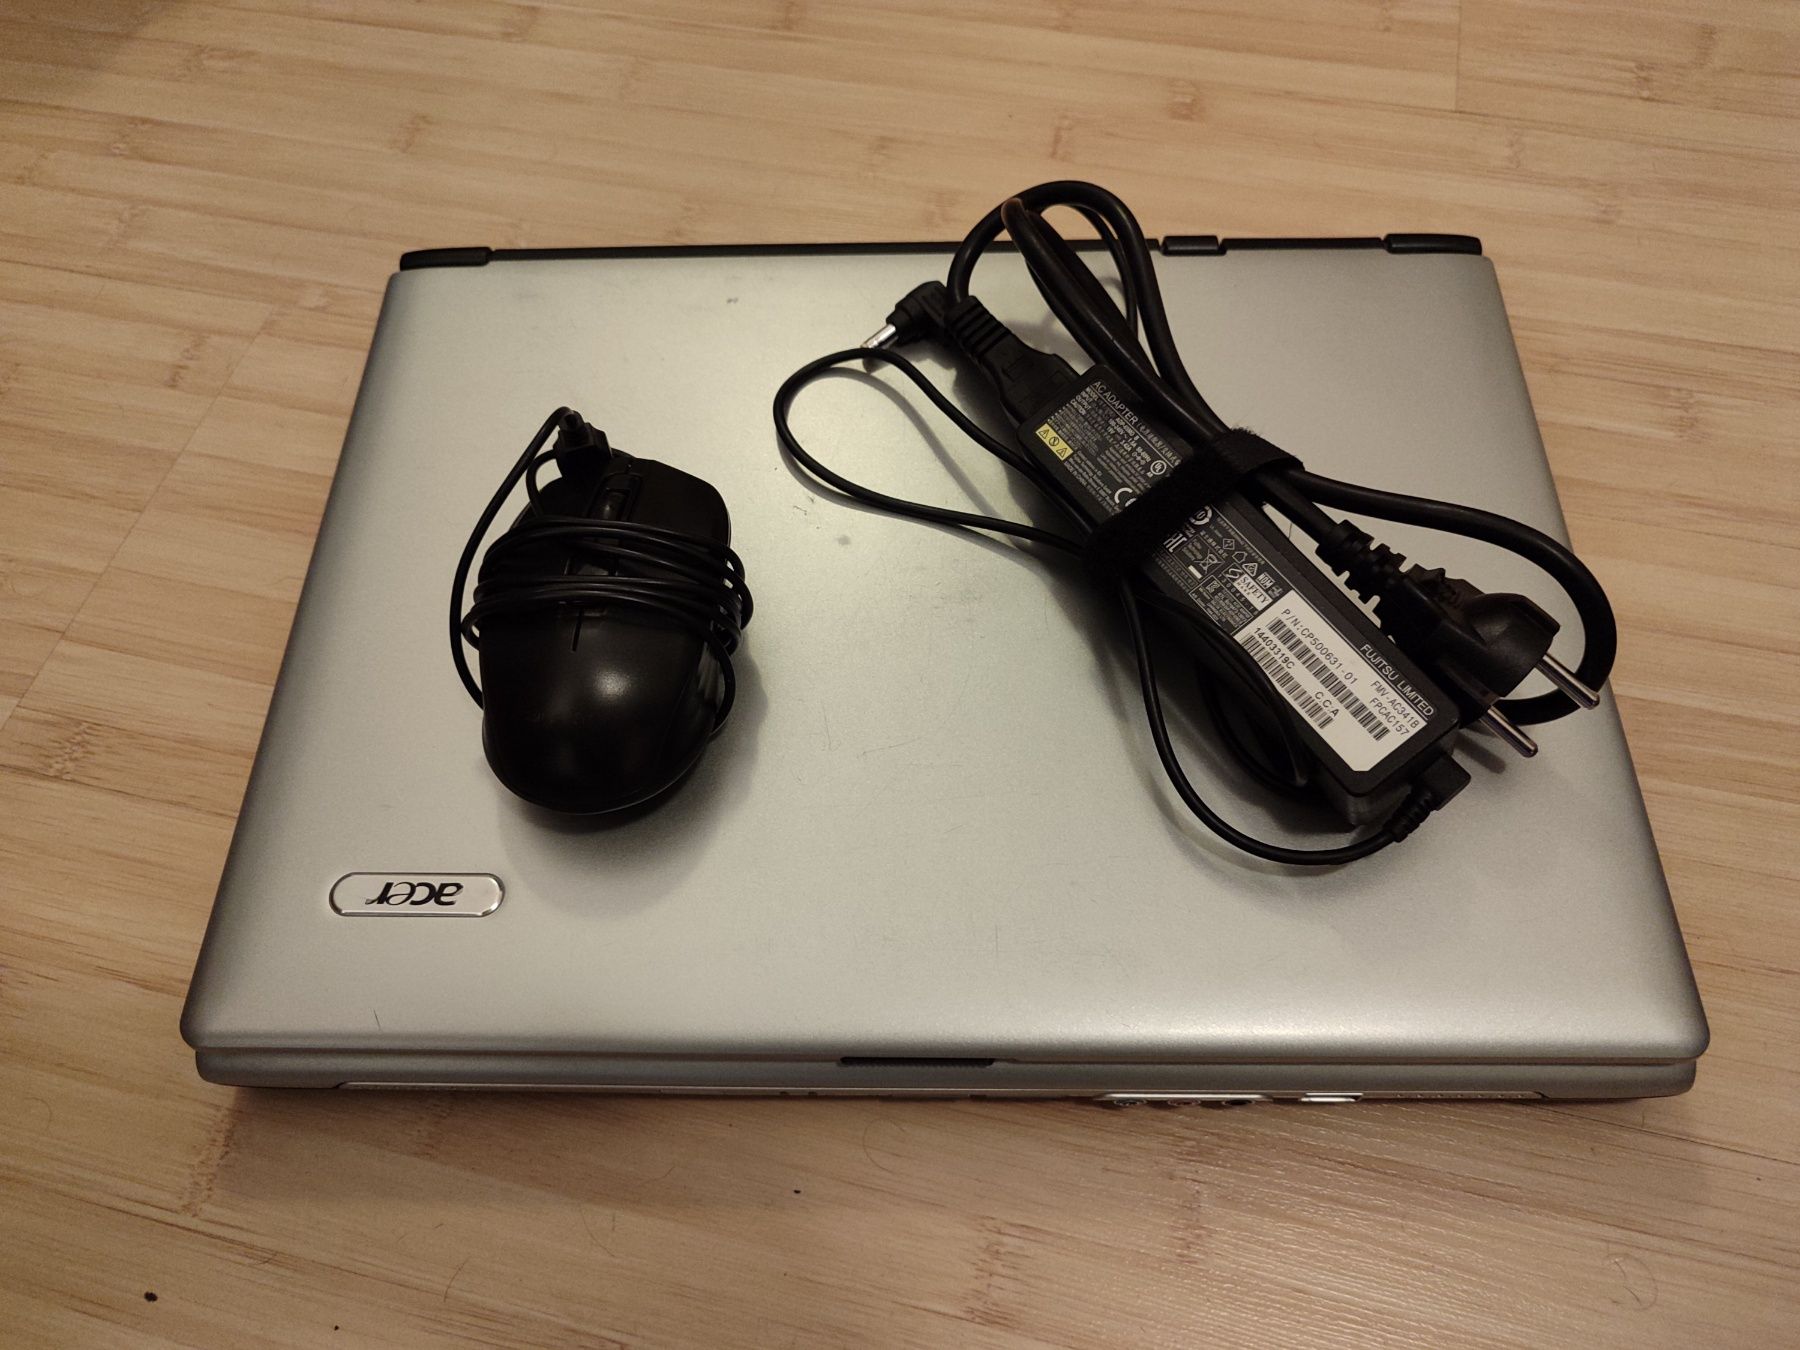 Лаптоп Acer Aspire 1650 със зарядно и мишка

процесор: Intel Pentium M